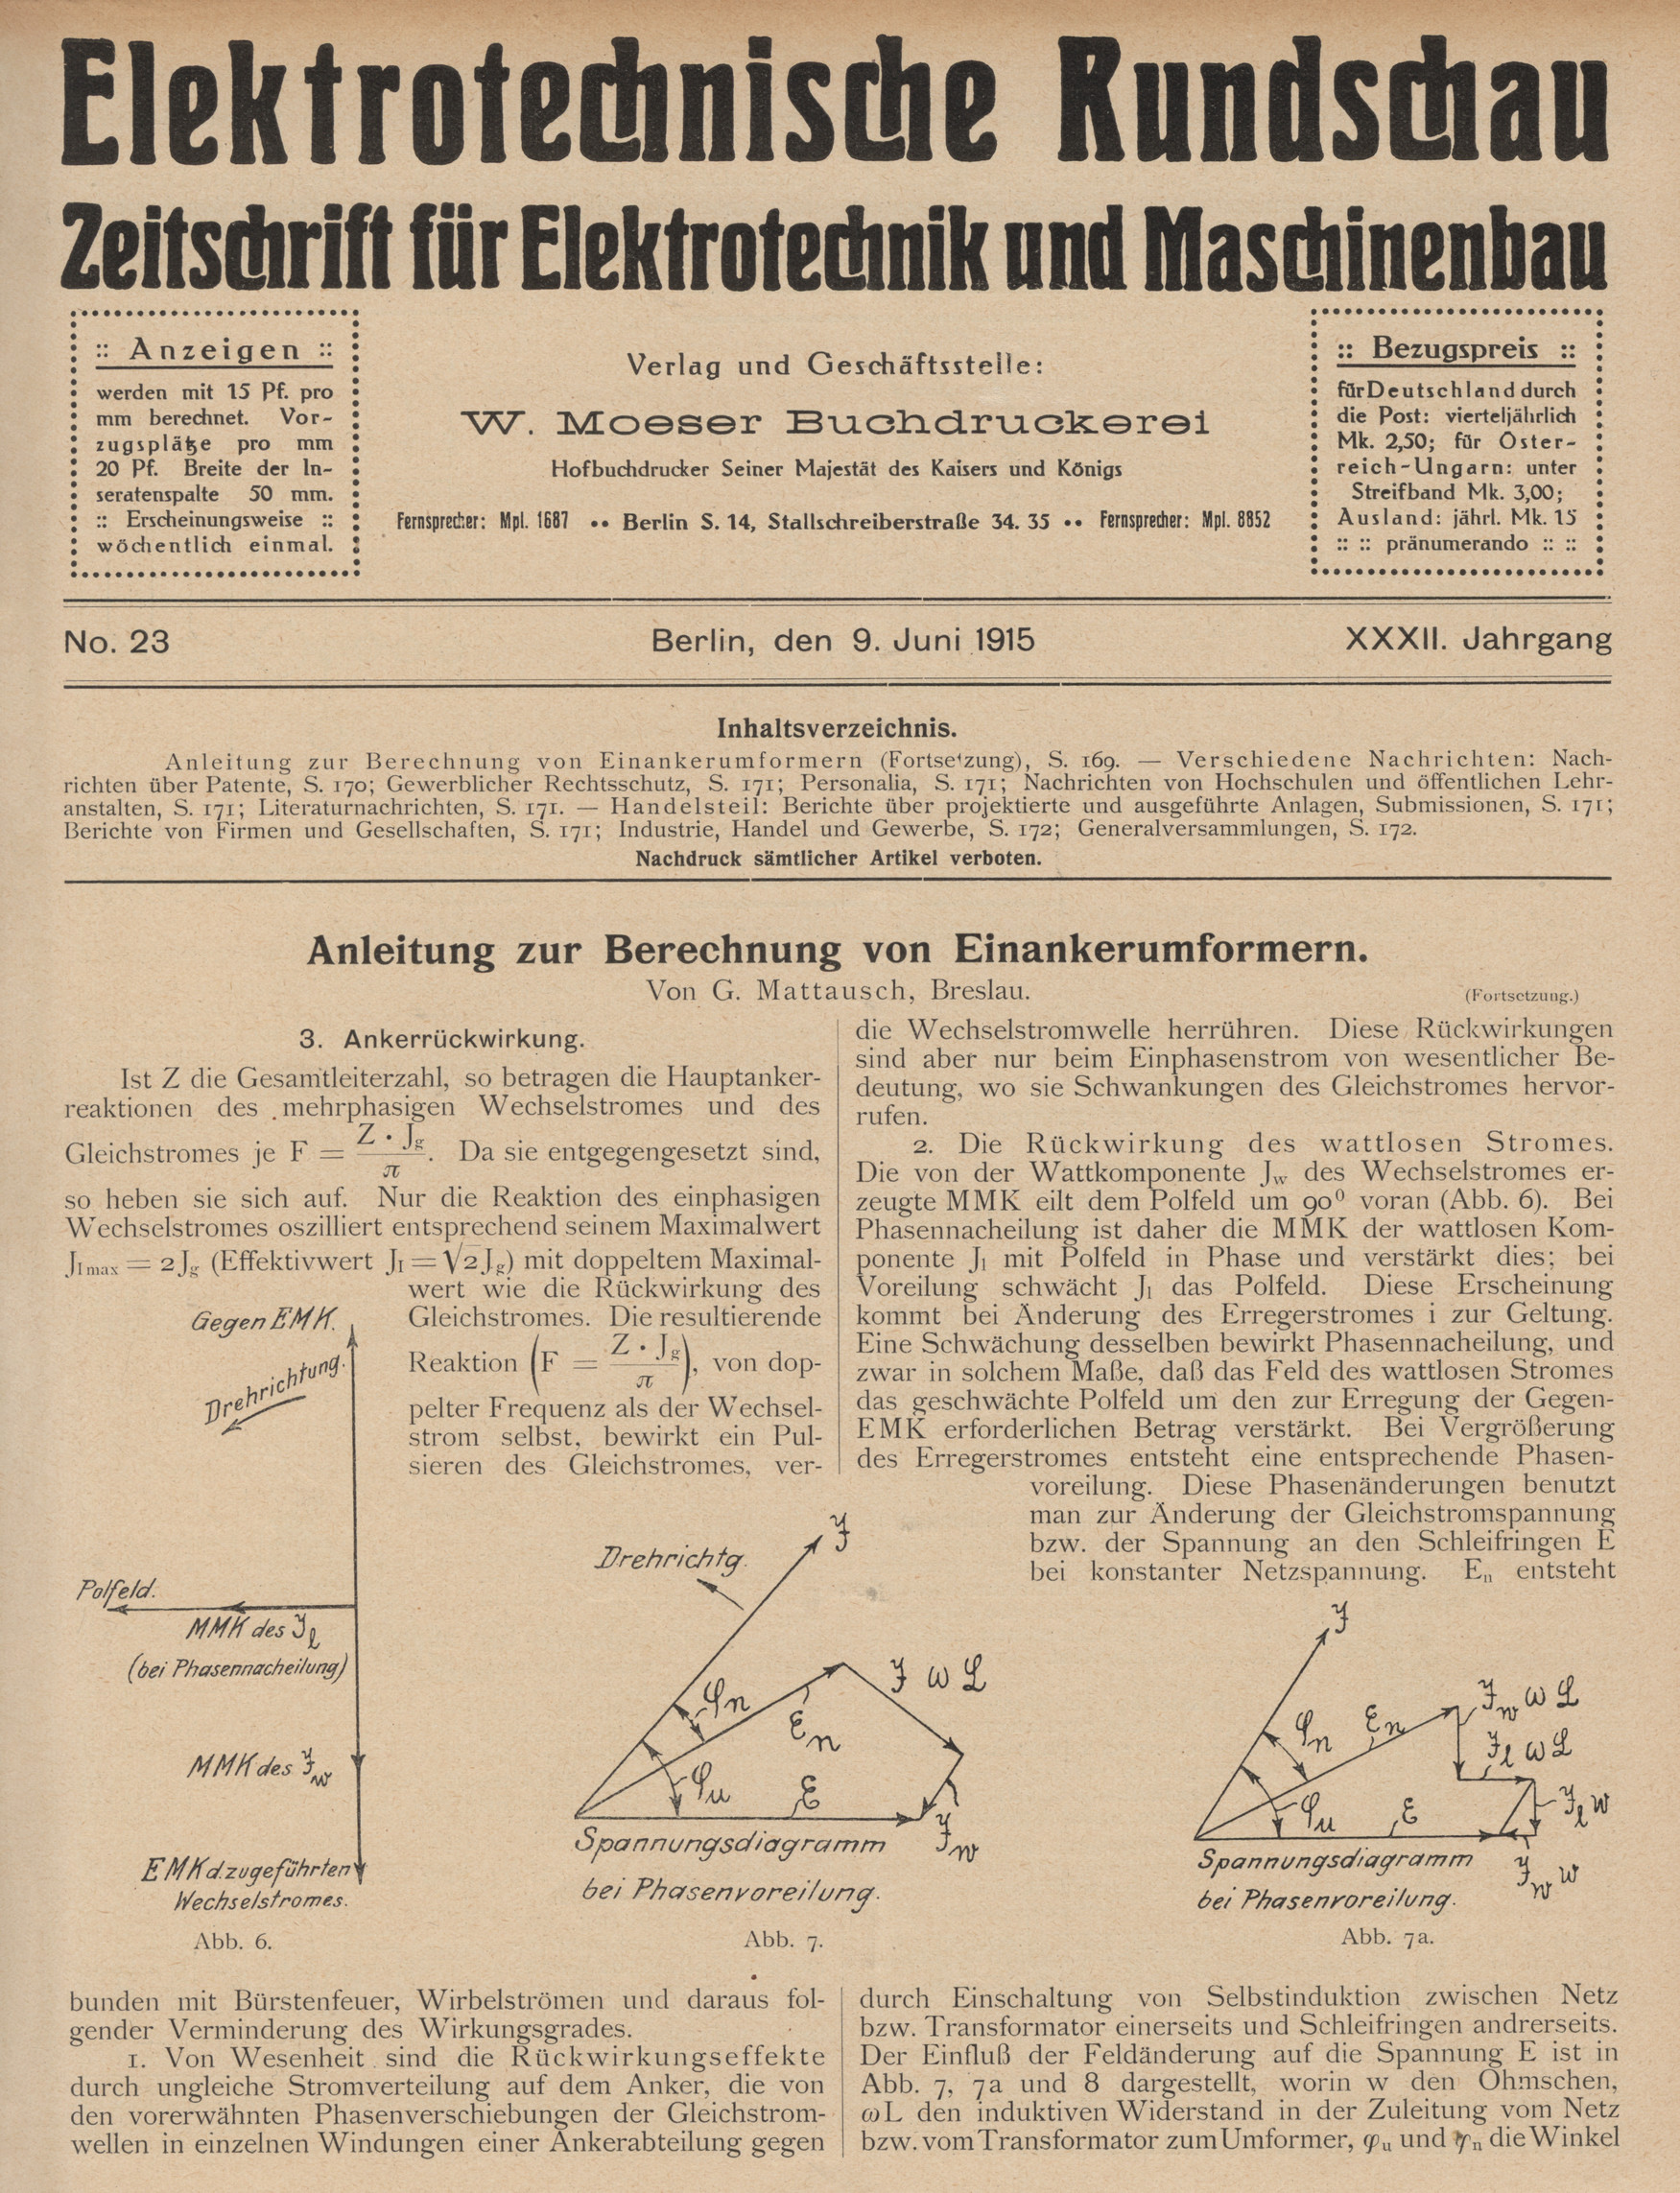 Elektrotechnische Rundschau : Zeitschrift für Elektrotechnik und Maschinenbau + Polytechnische Rundschau, No. 23, XXXII. Jahrgang